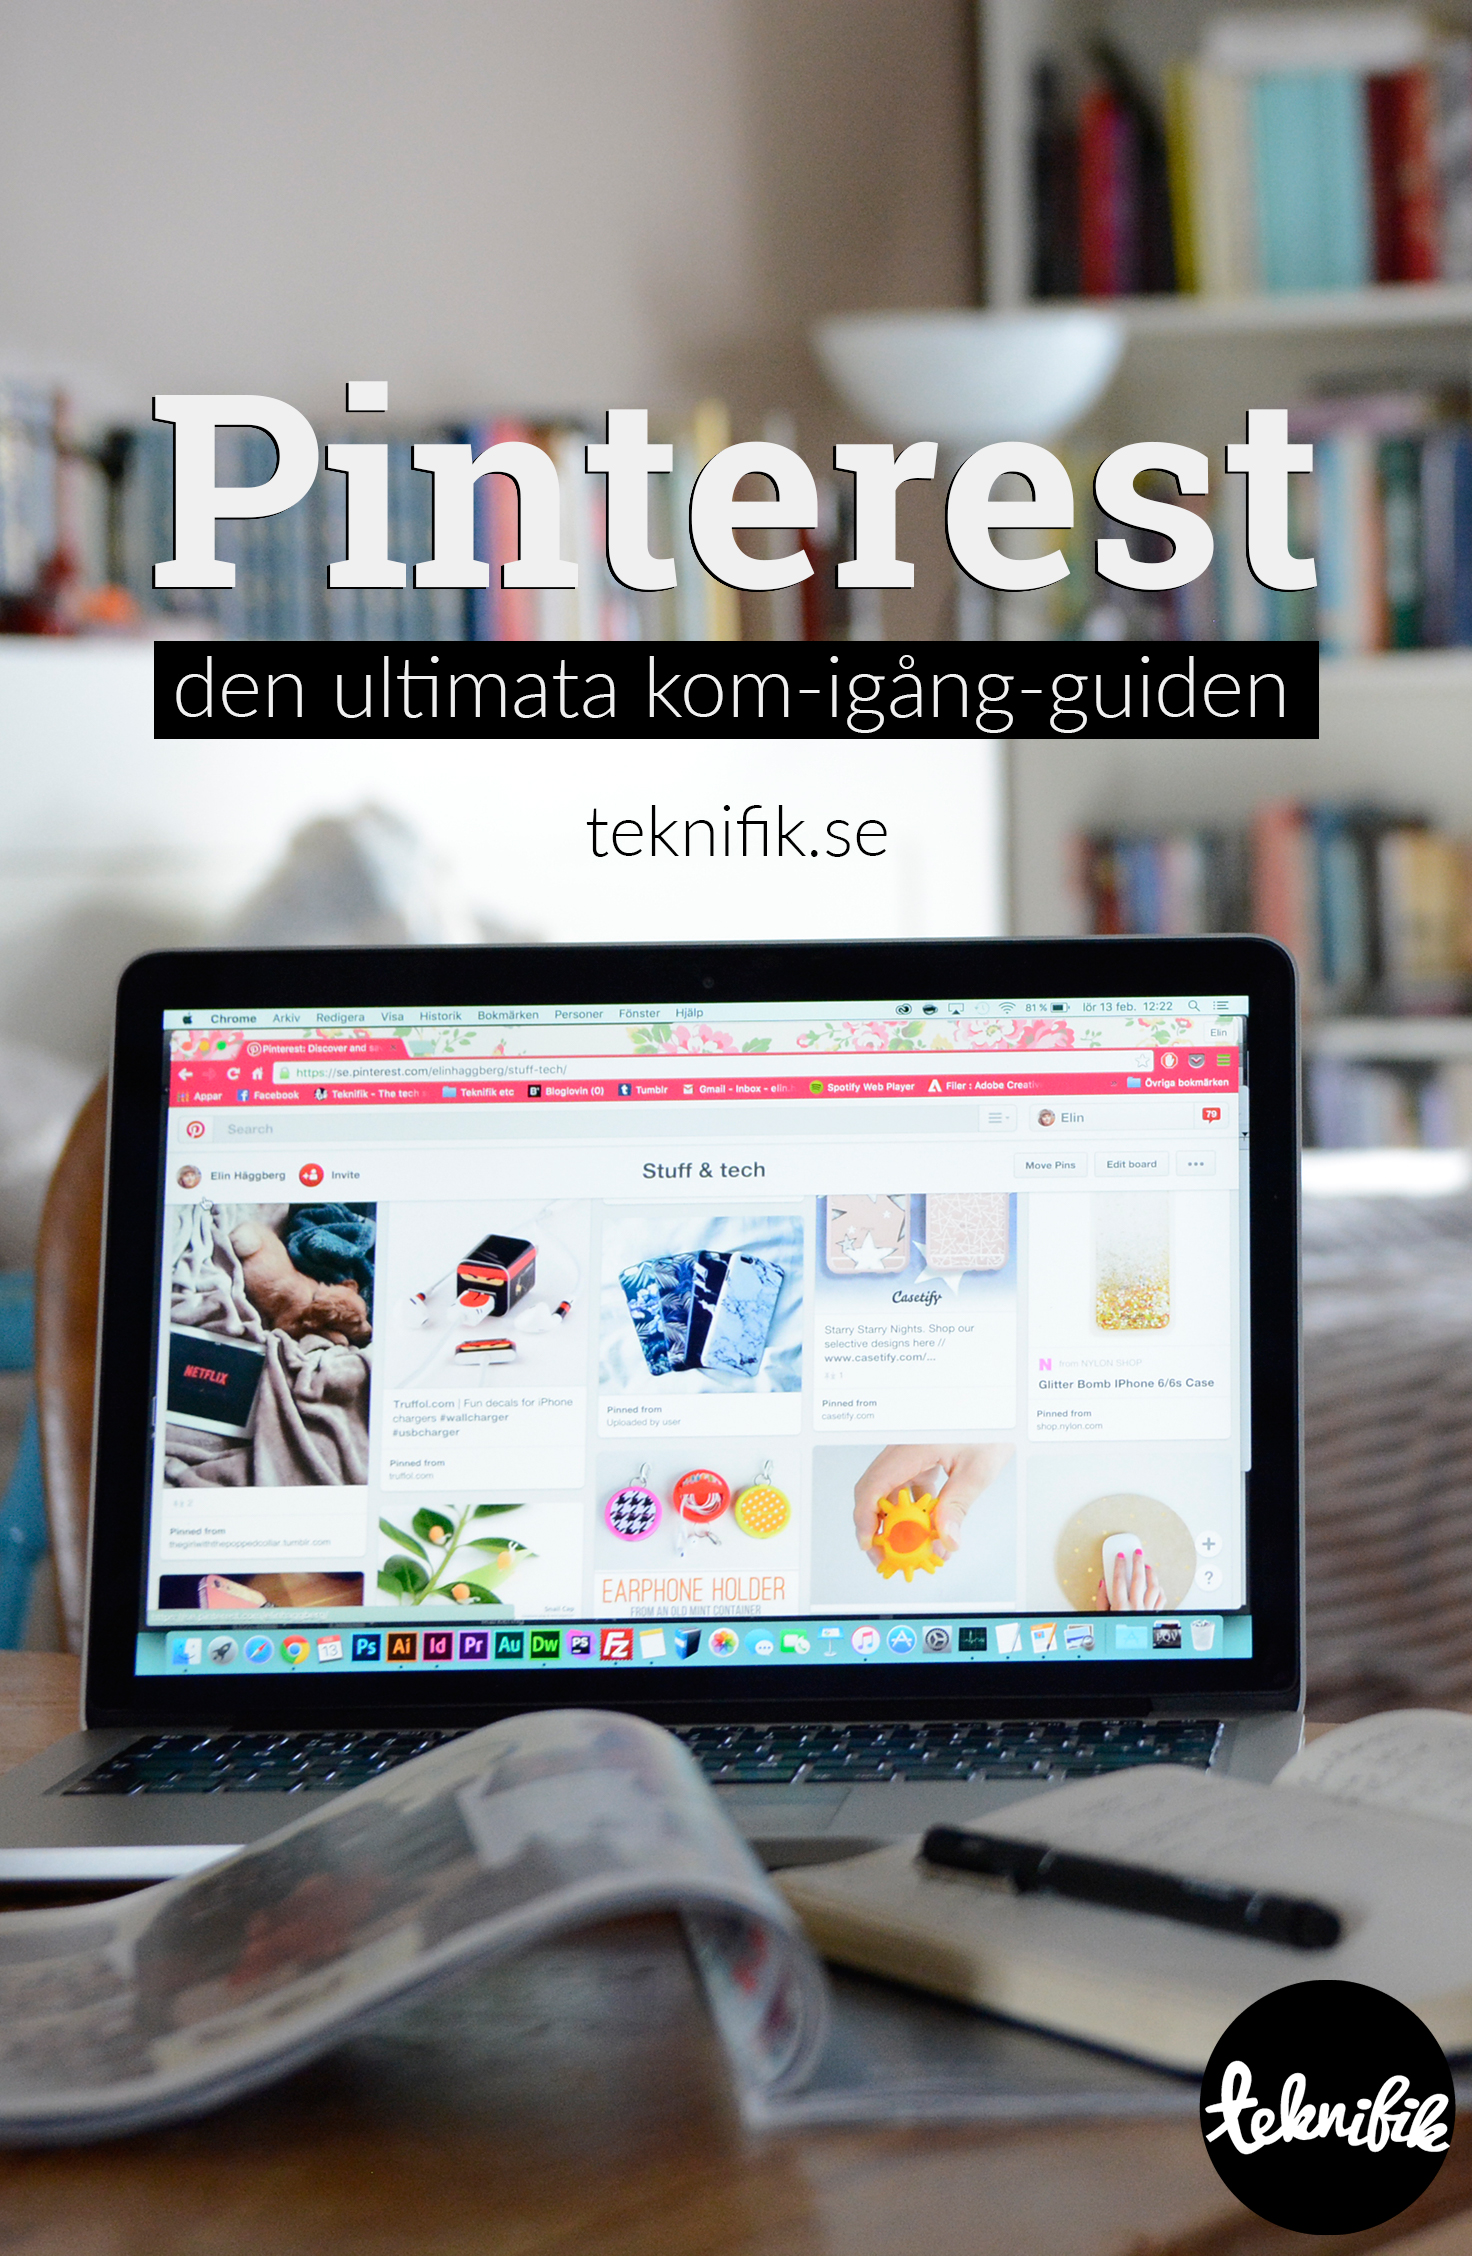 Kom igång med Pinterest snabbt och enkelt med hjälp av denna guide.